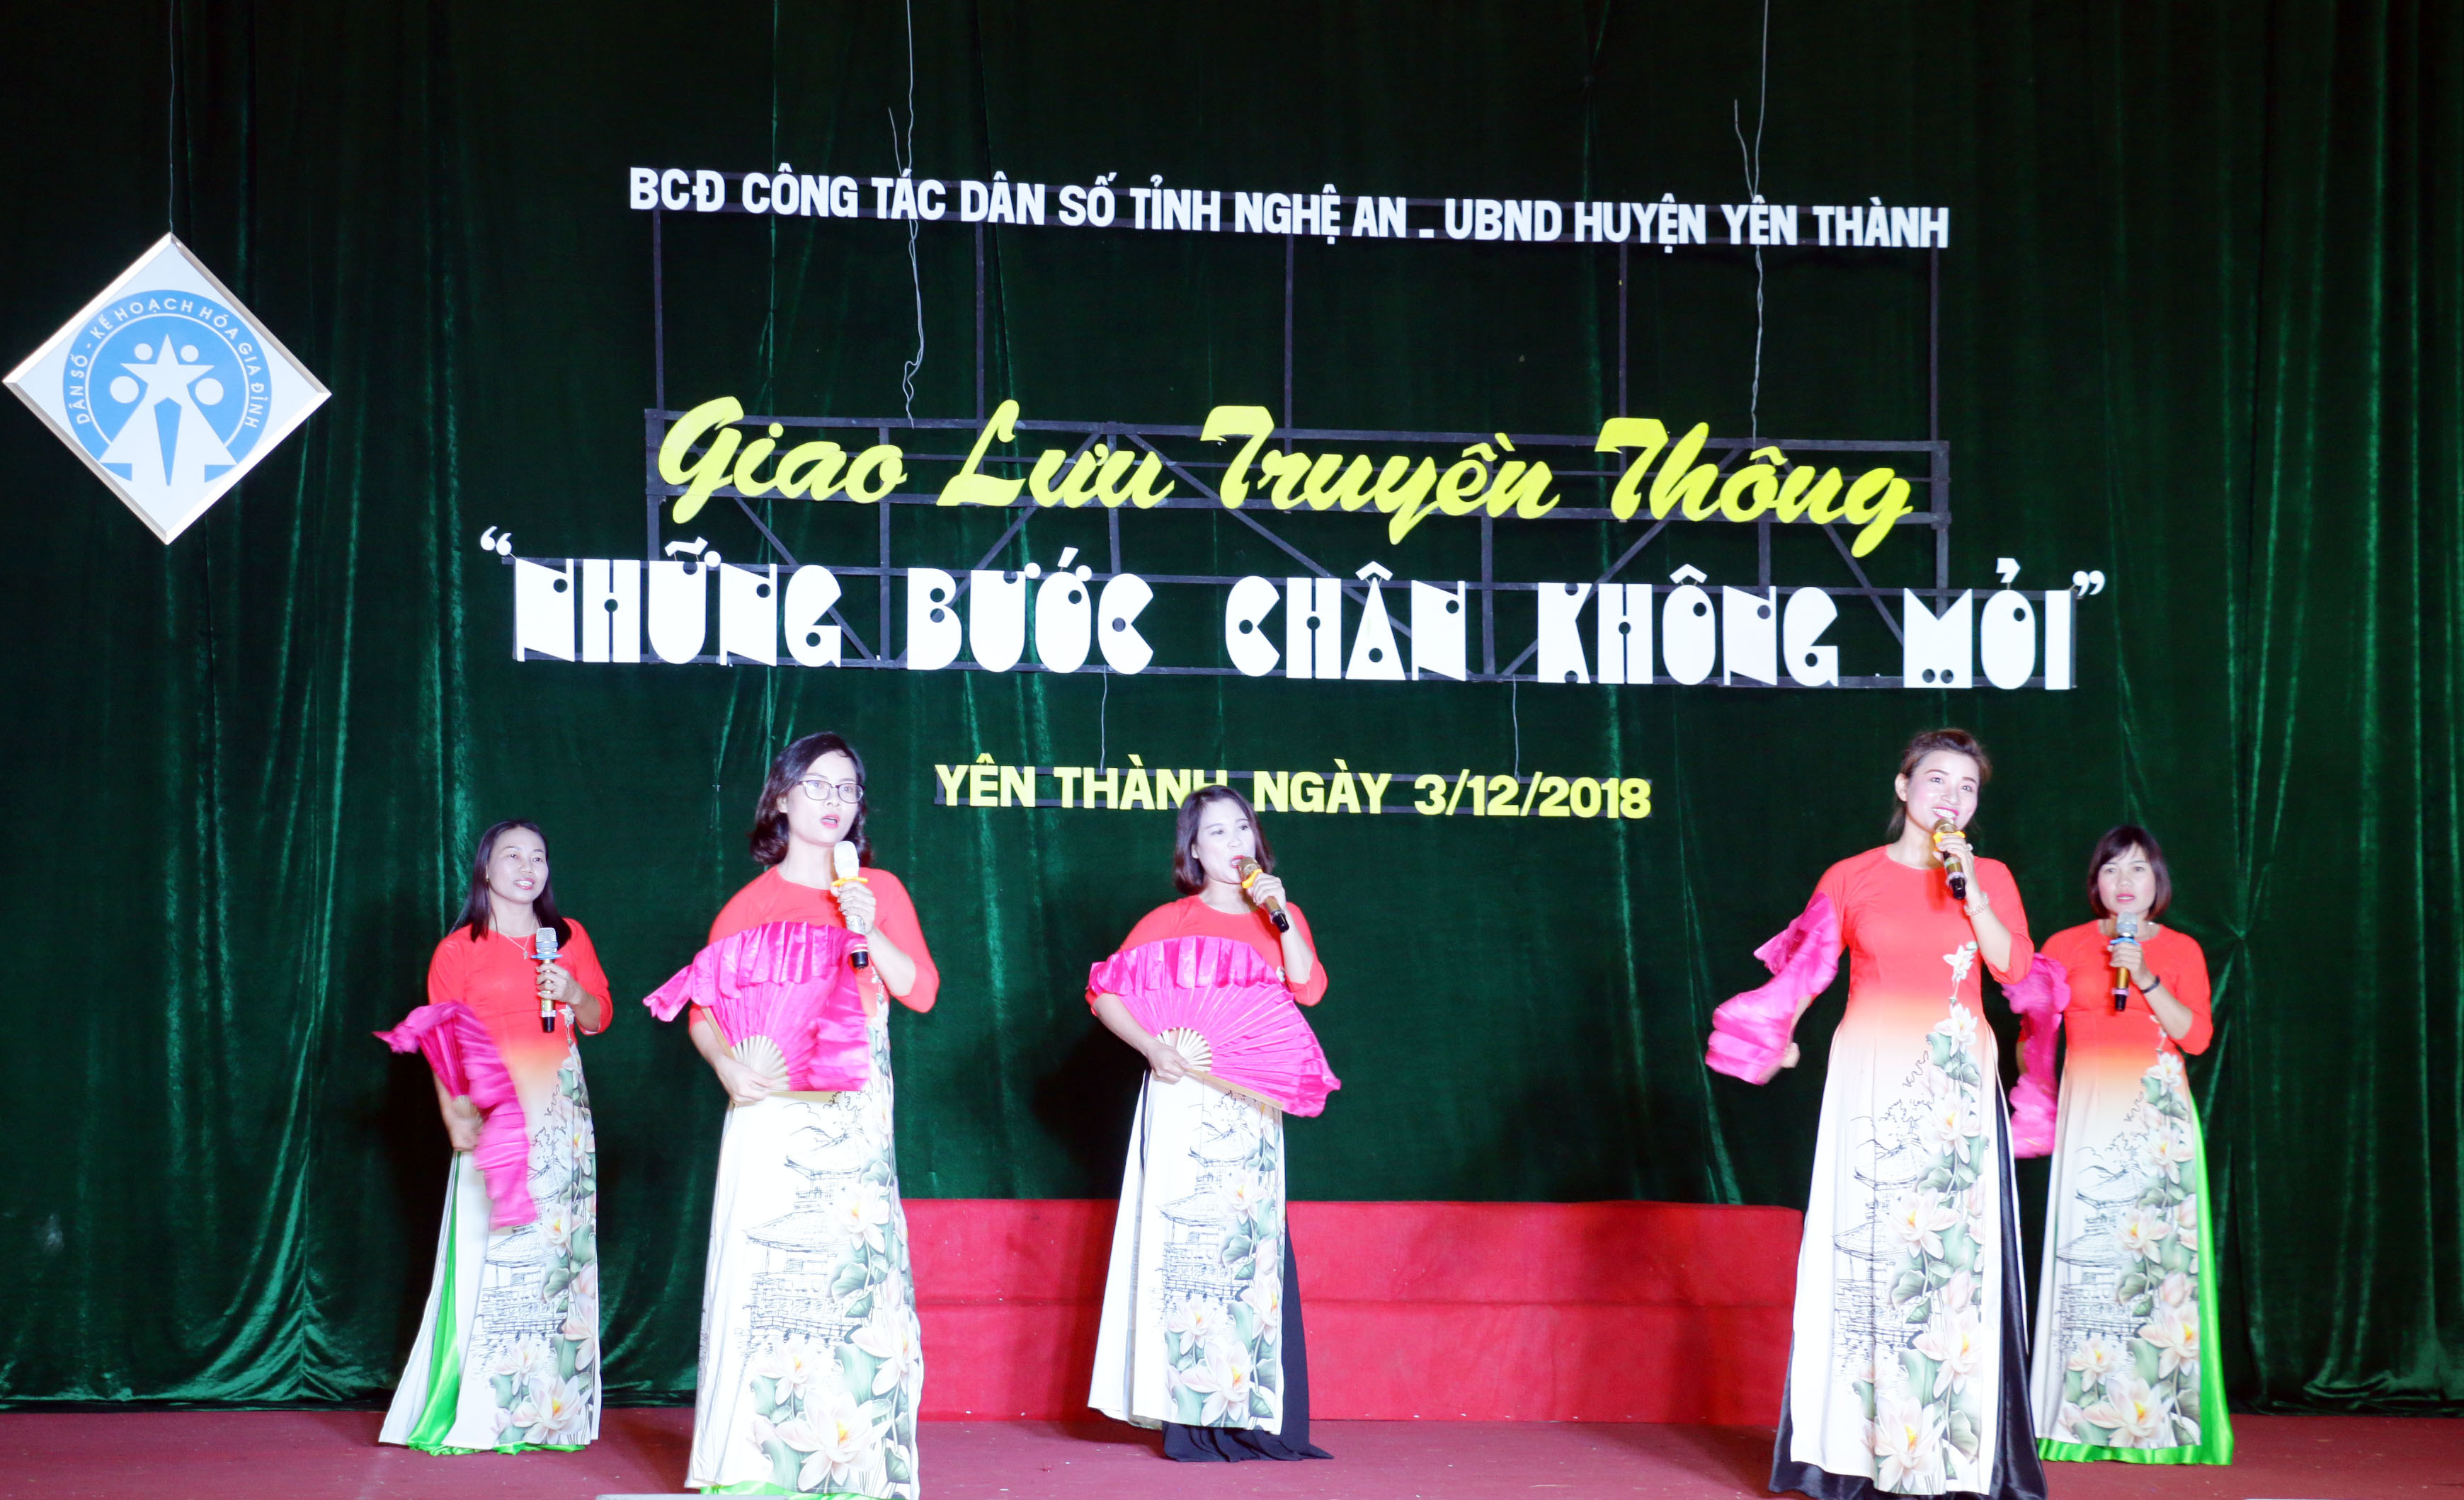 Tiếng hát của các cộng tác viên dân số huyện Yên Thành. Ảnh: Mỹ Hà